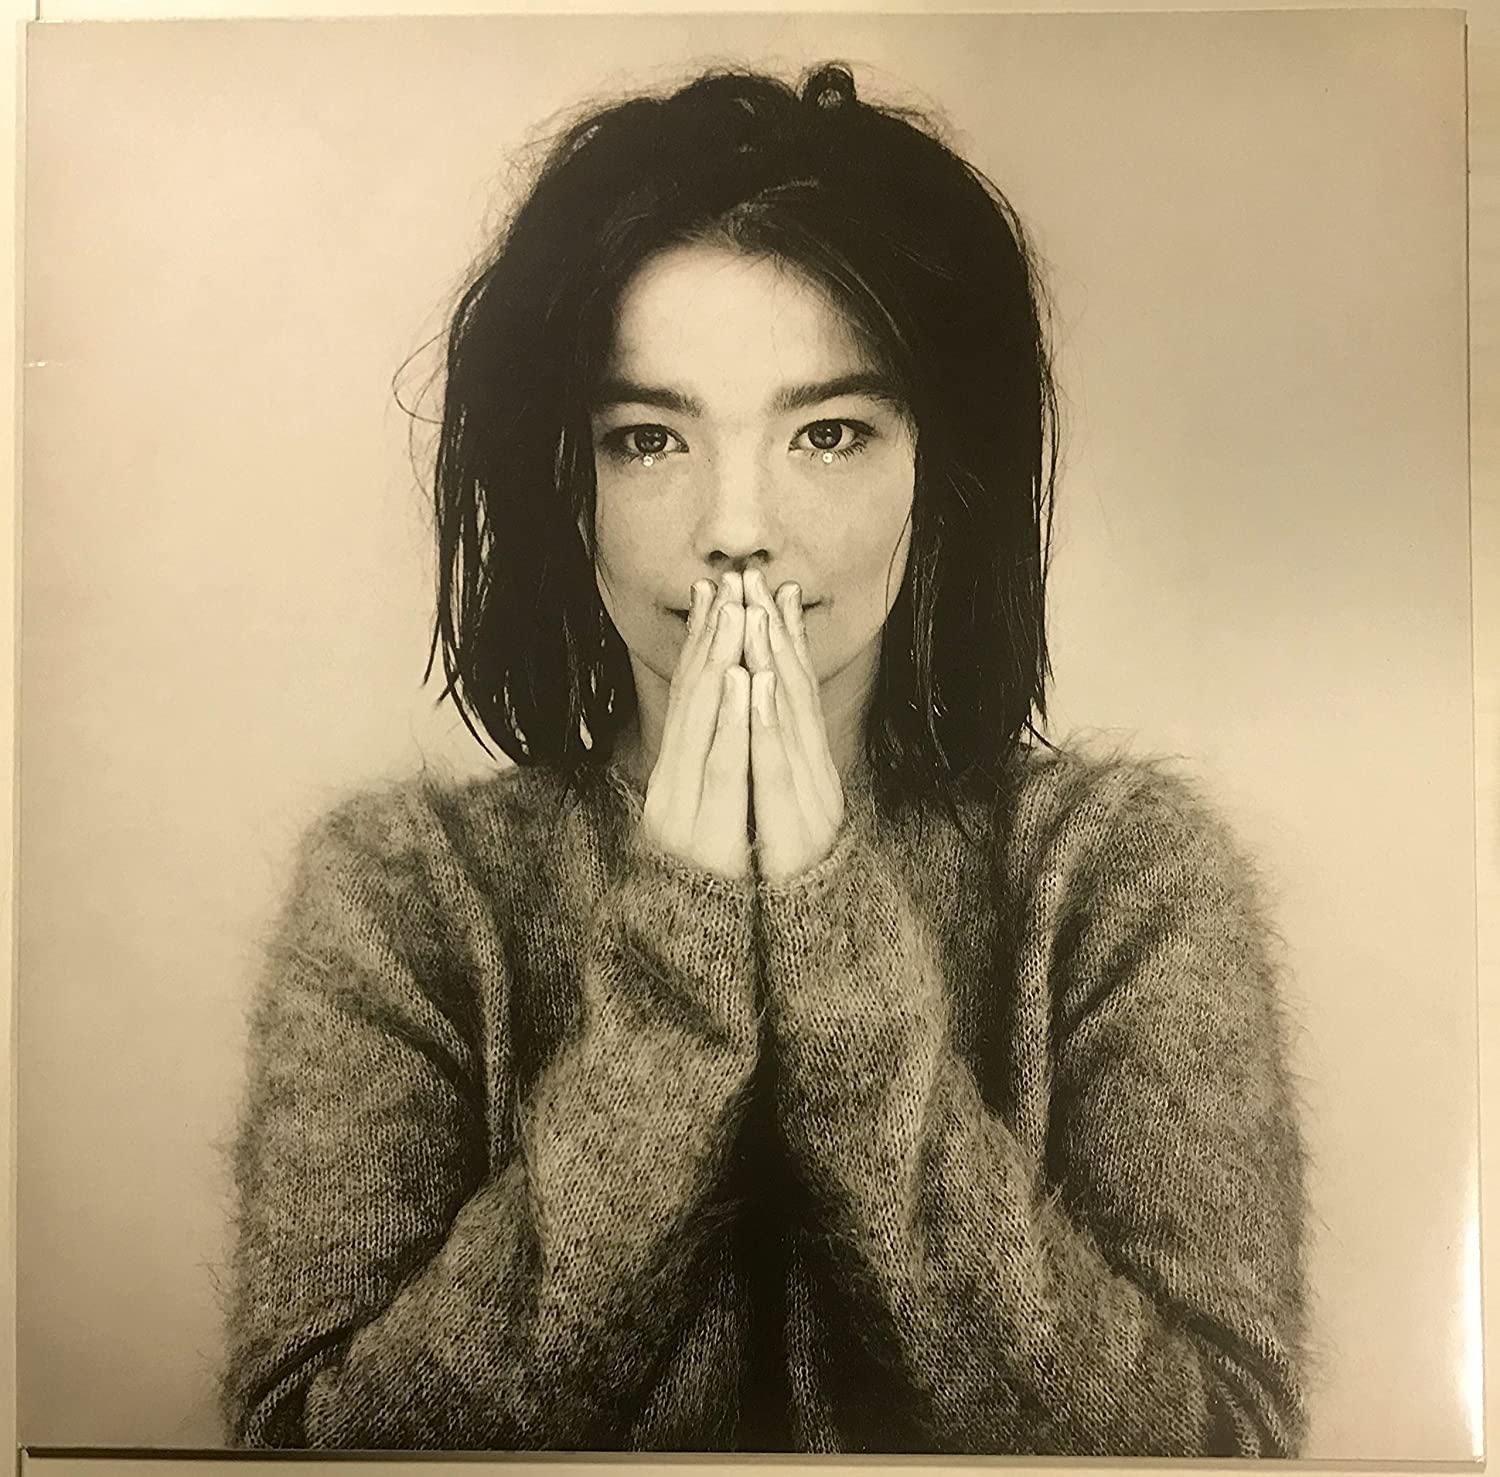 Björk - Debut (1993) LP